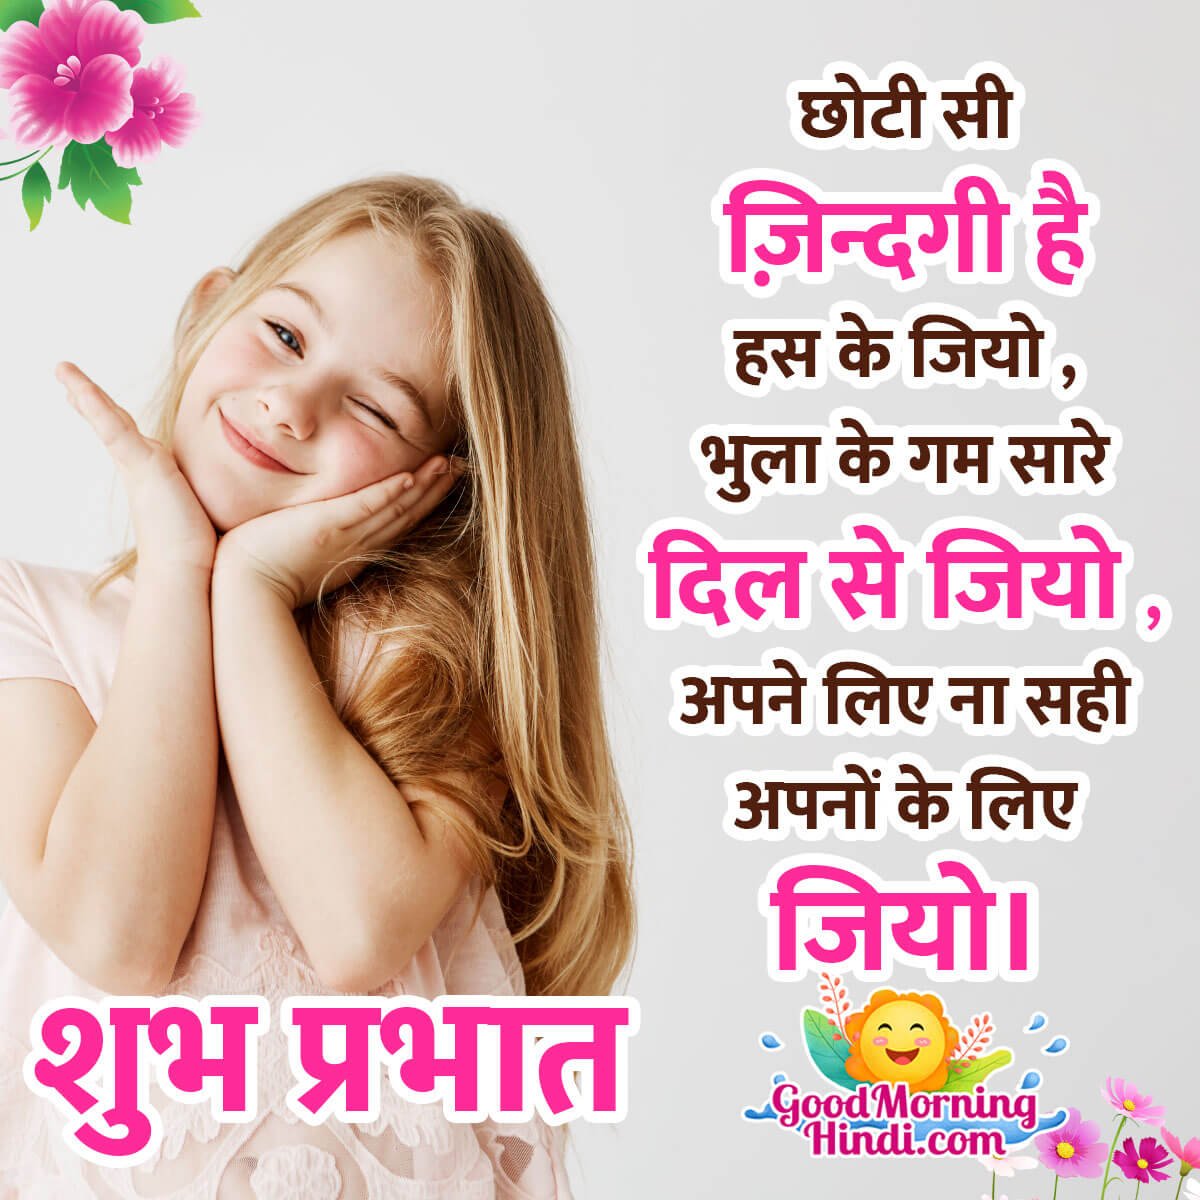 Good Morning Hindi Message Pic